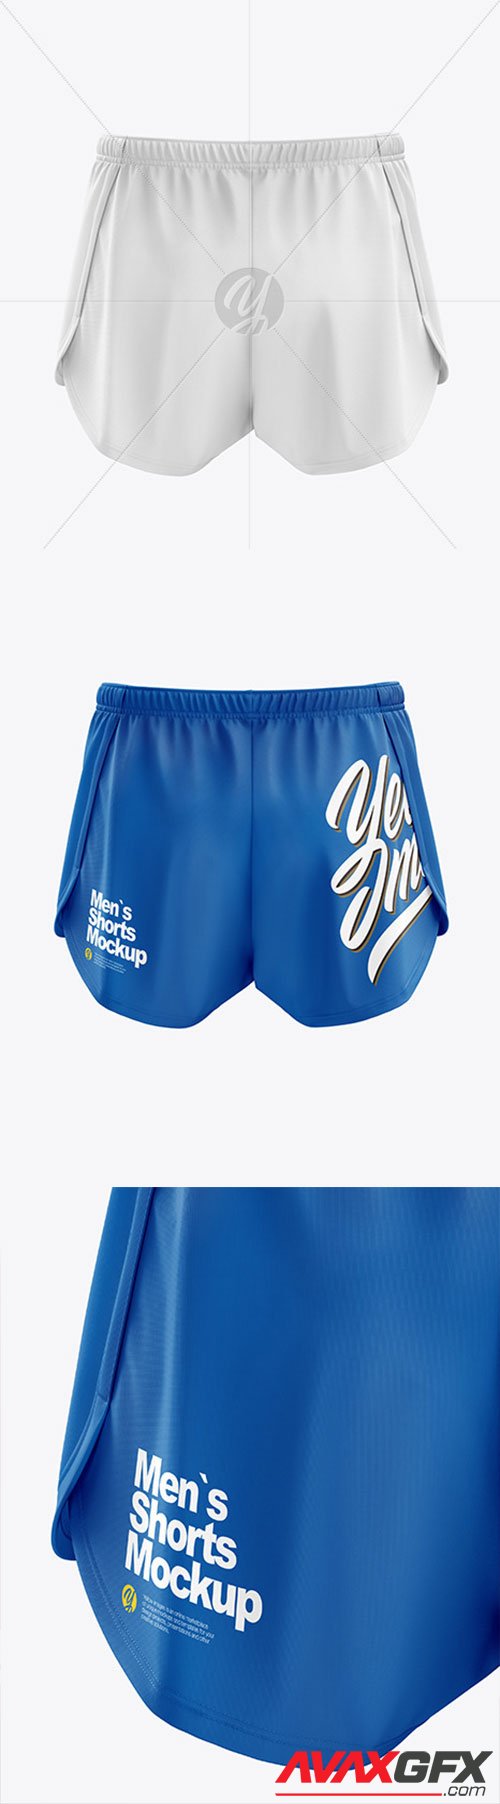 Men’s Split Shorts mockup (Back View) 57118